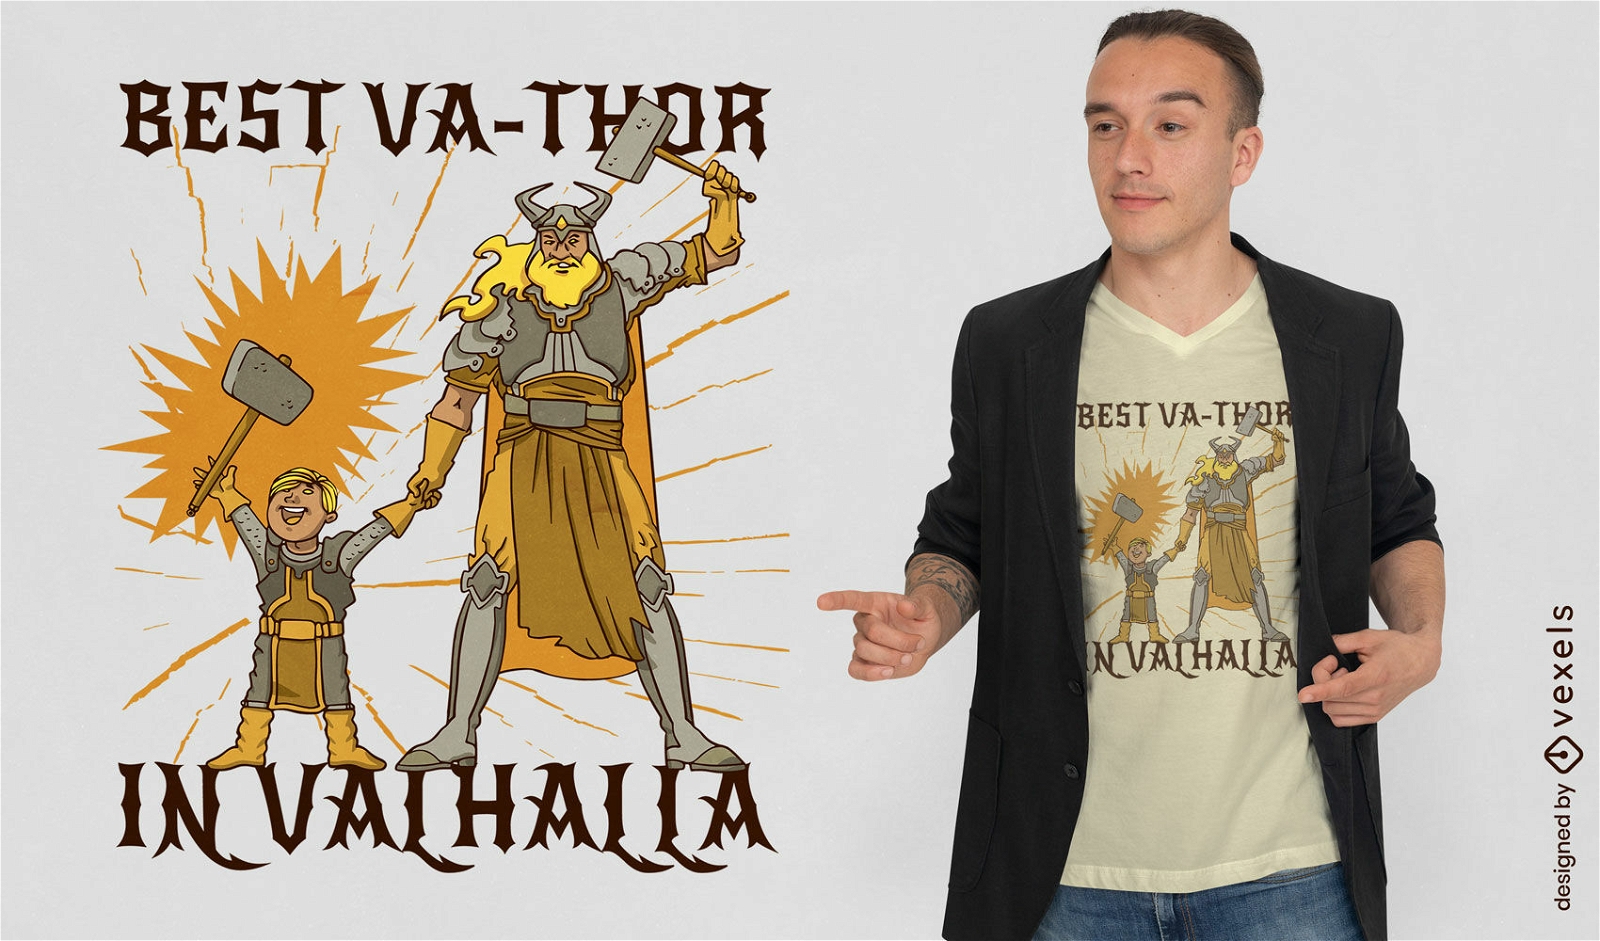 Valhalla dad t-shirt design